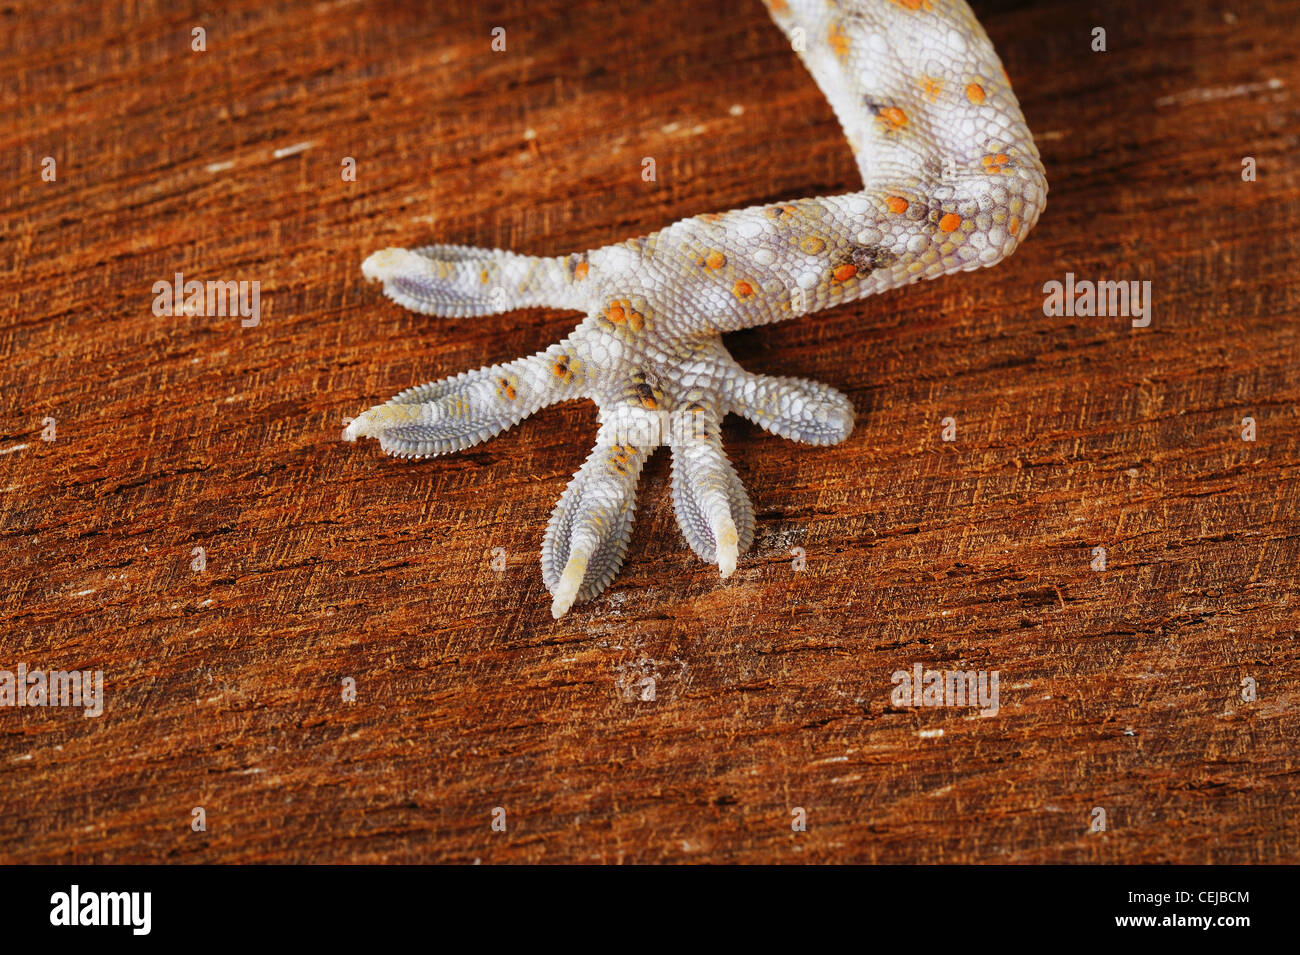 Gecko hands Stock Photo